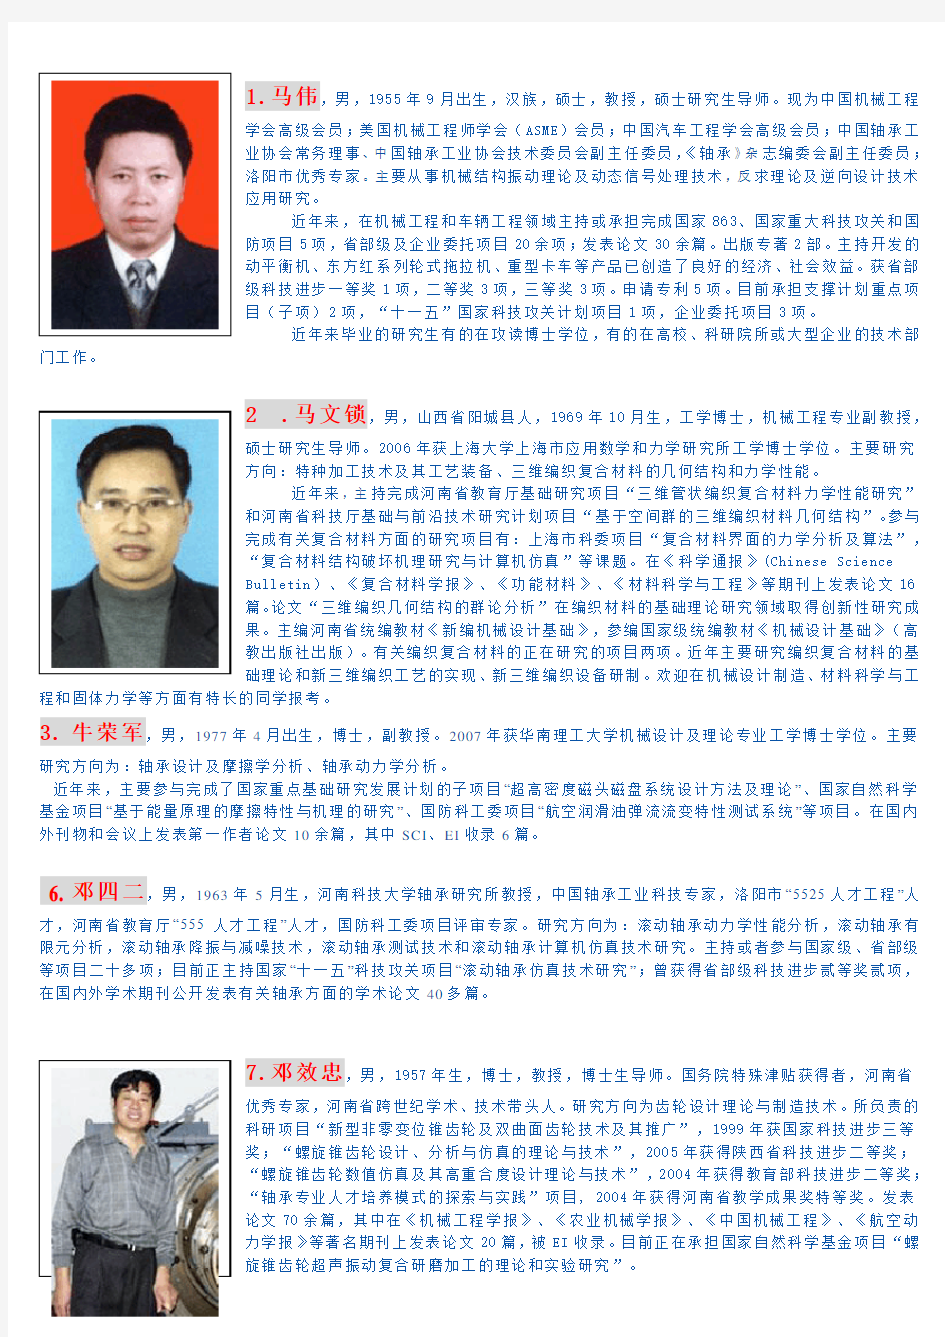 河南科技大学-机电学院导师信息